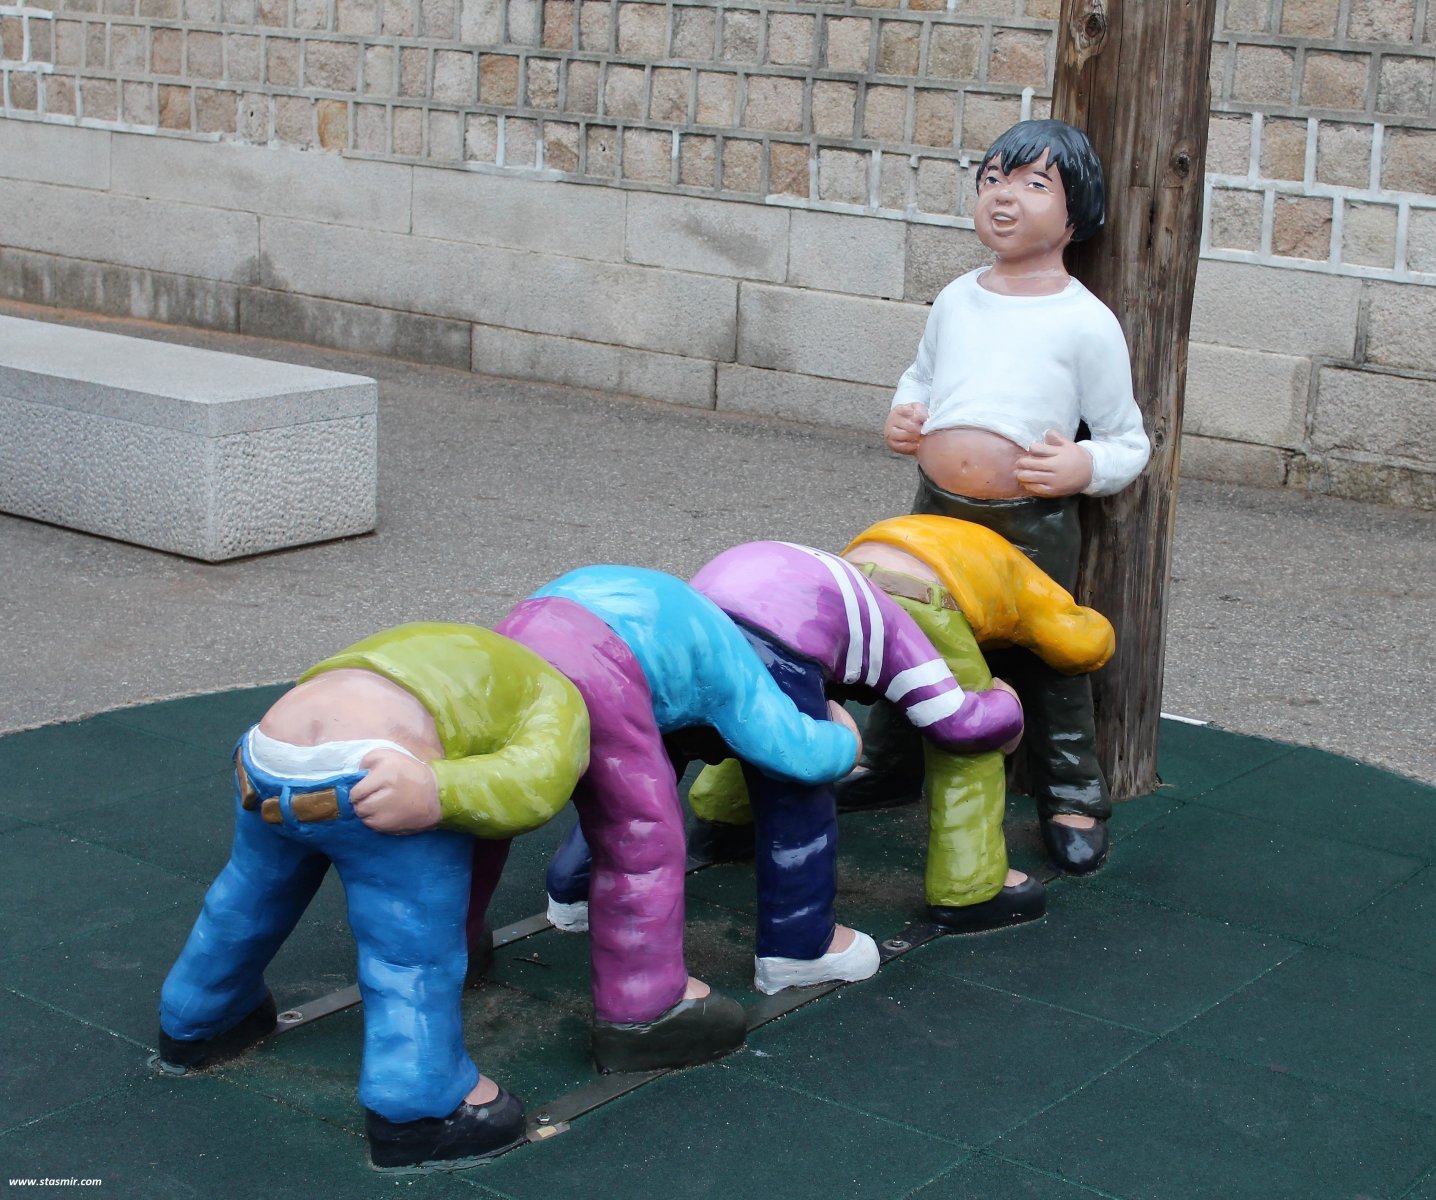 Не ведаю, в какую игру игруют эти скульптурные дети на улицах Сеула, Южная Корея, фото Стасмир, photo Stasmir